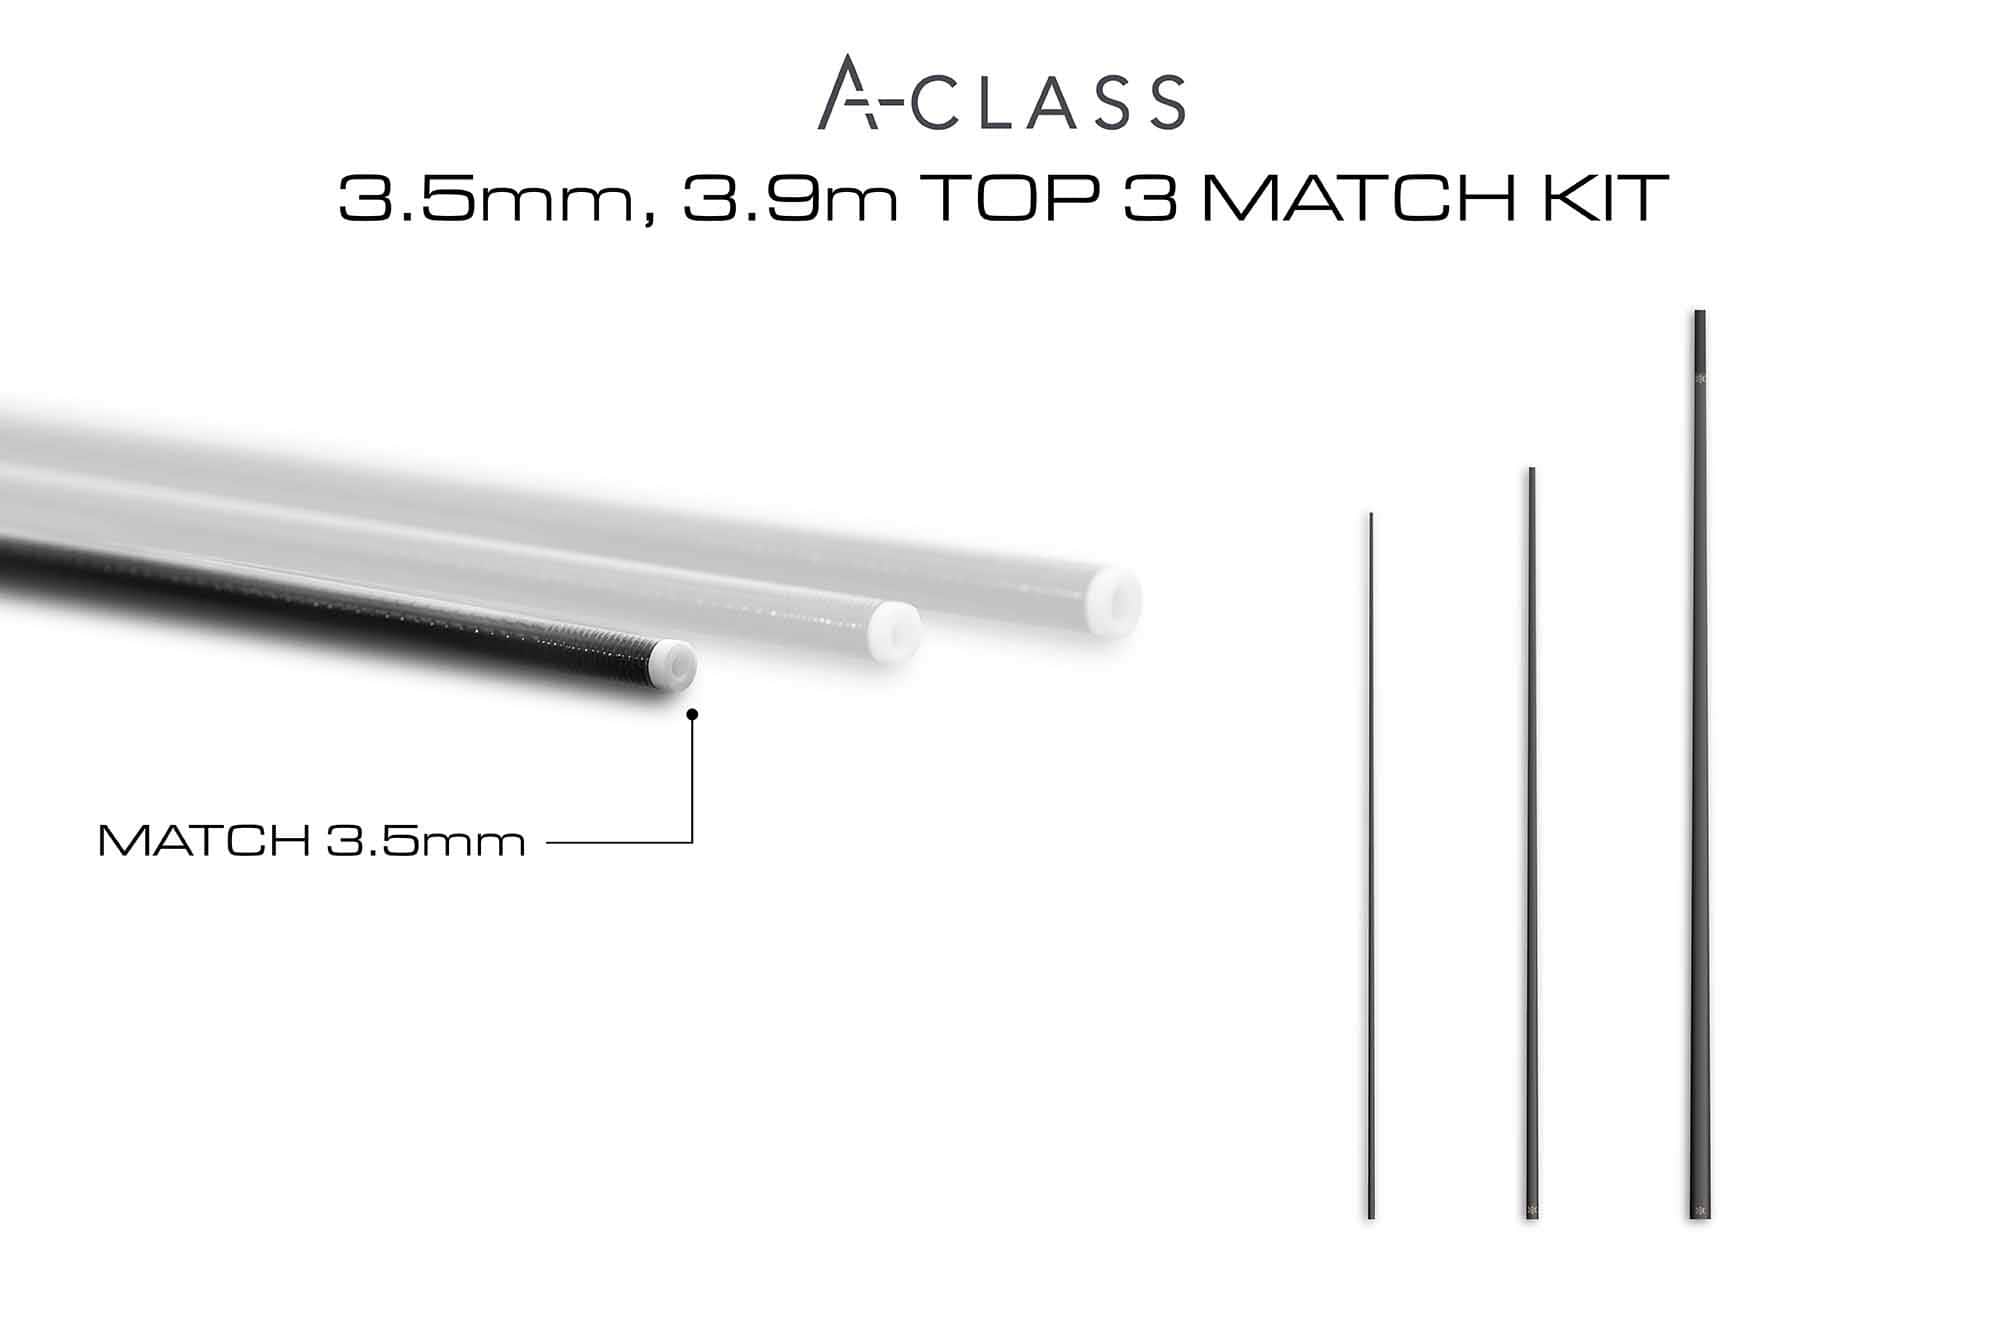 guru a-class 3.5mm 3.9m top 3 match kit